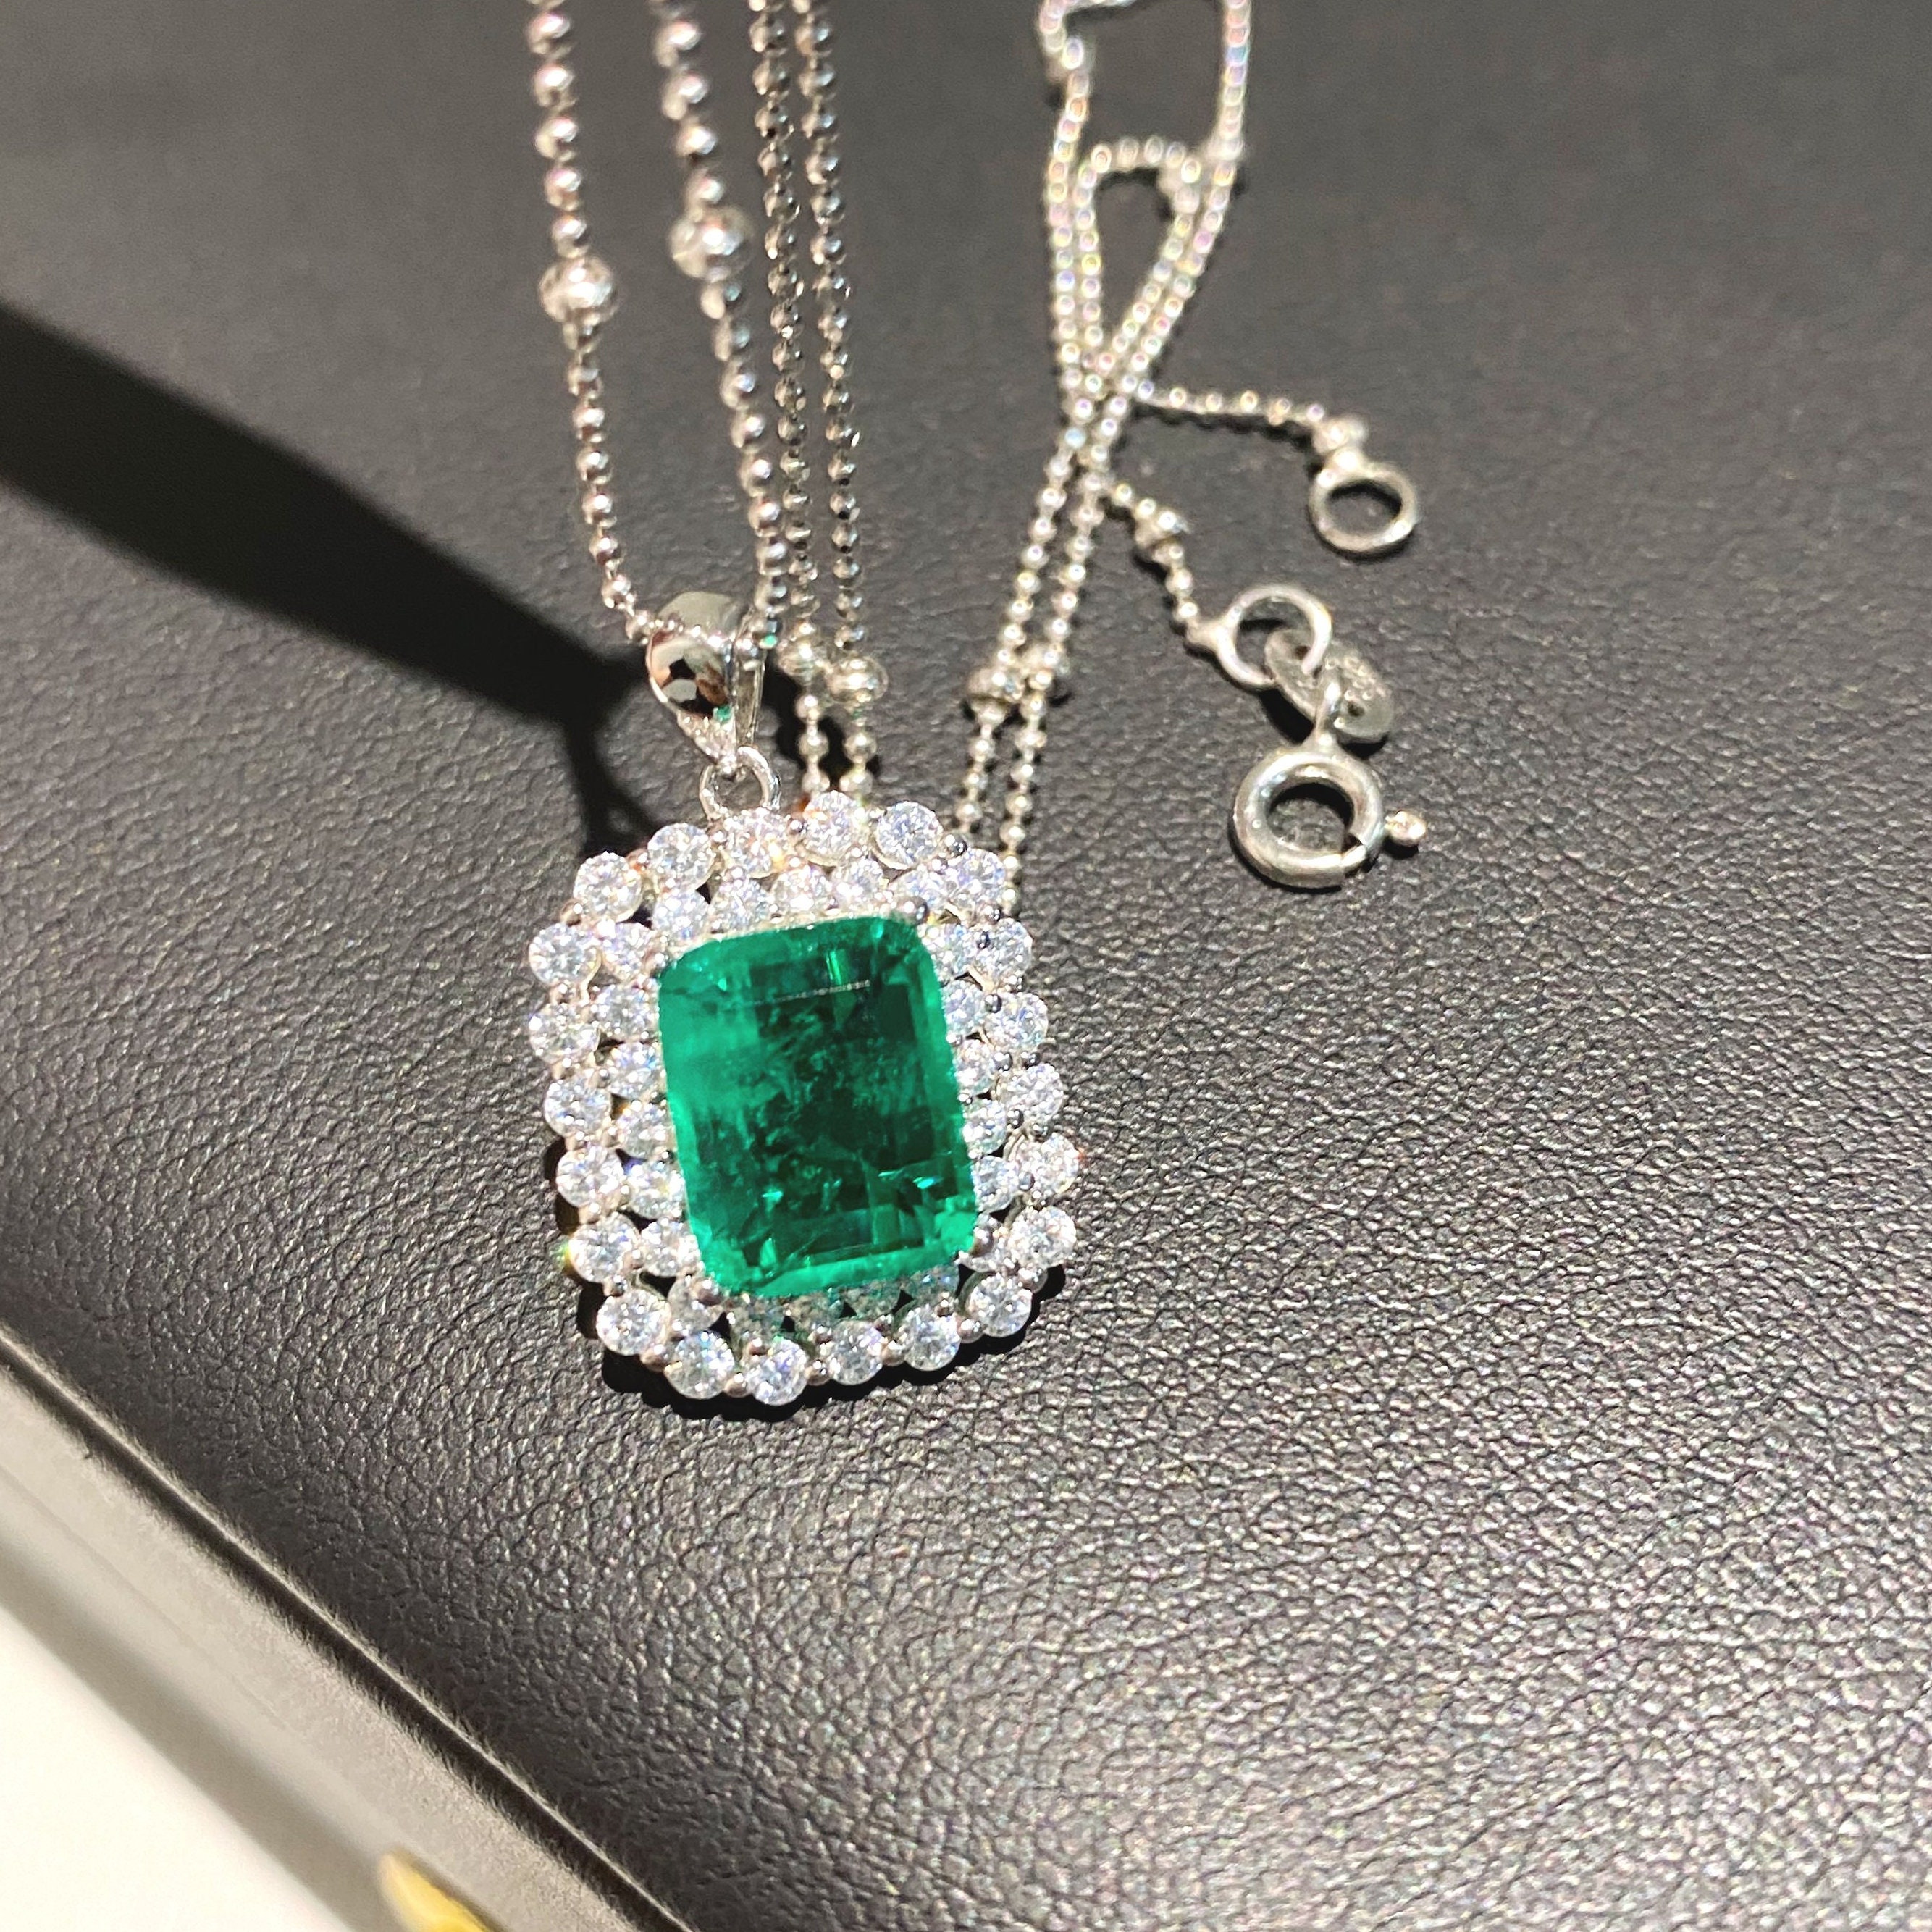 Stunning High Quality Imitation Emerald Necklace Pendant 18K | Etsy